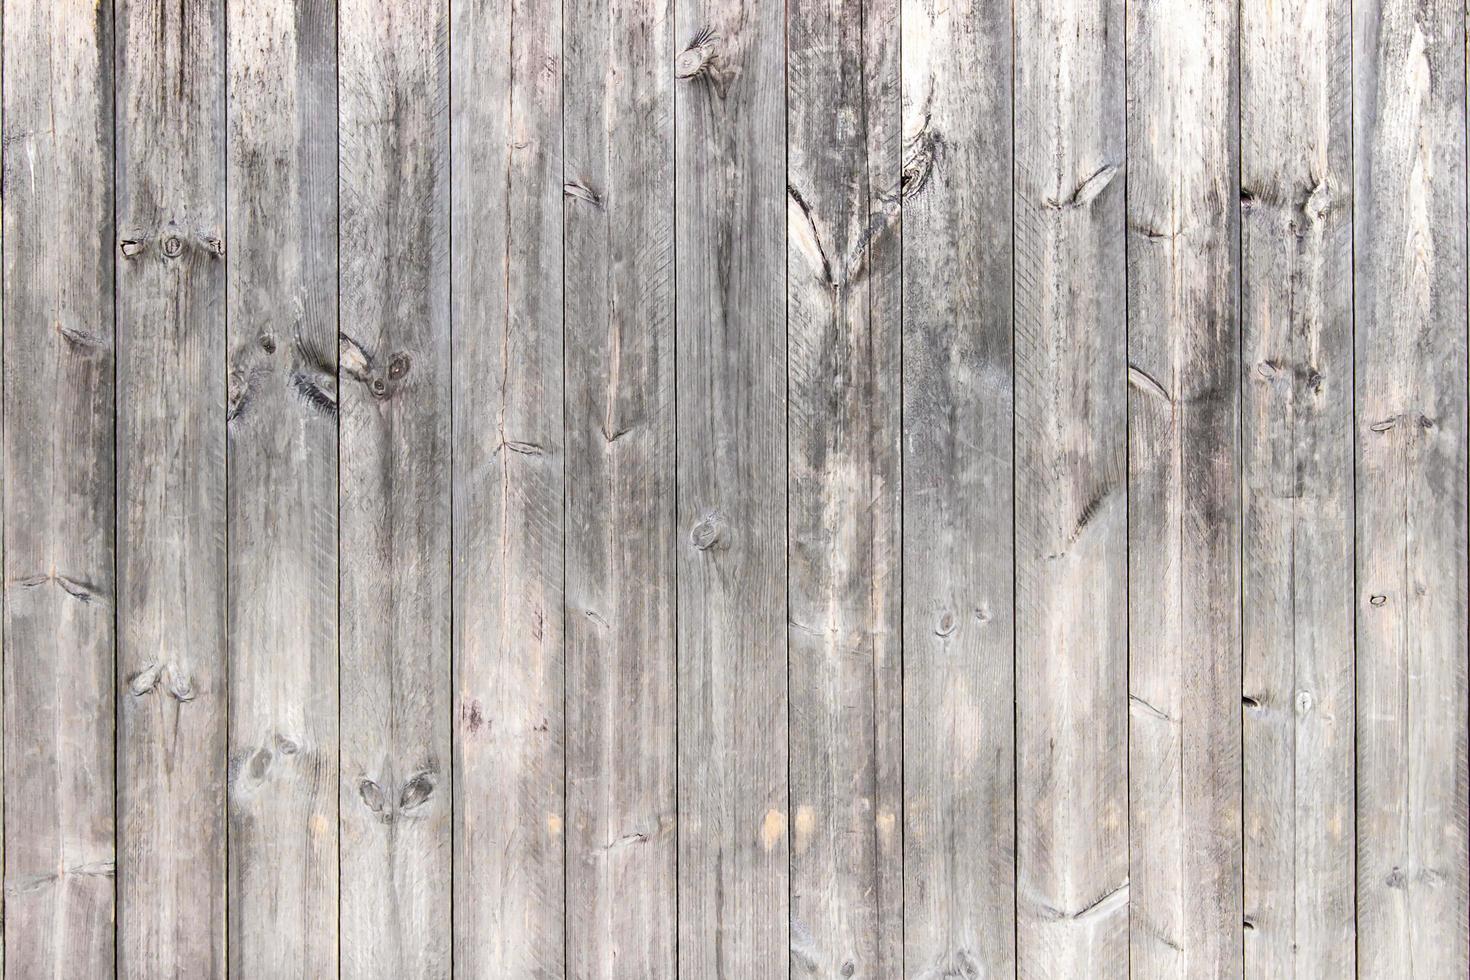 cor clara da parede de madeira e padrão vintage para fundo e textura foto